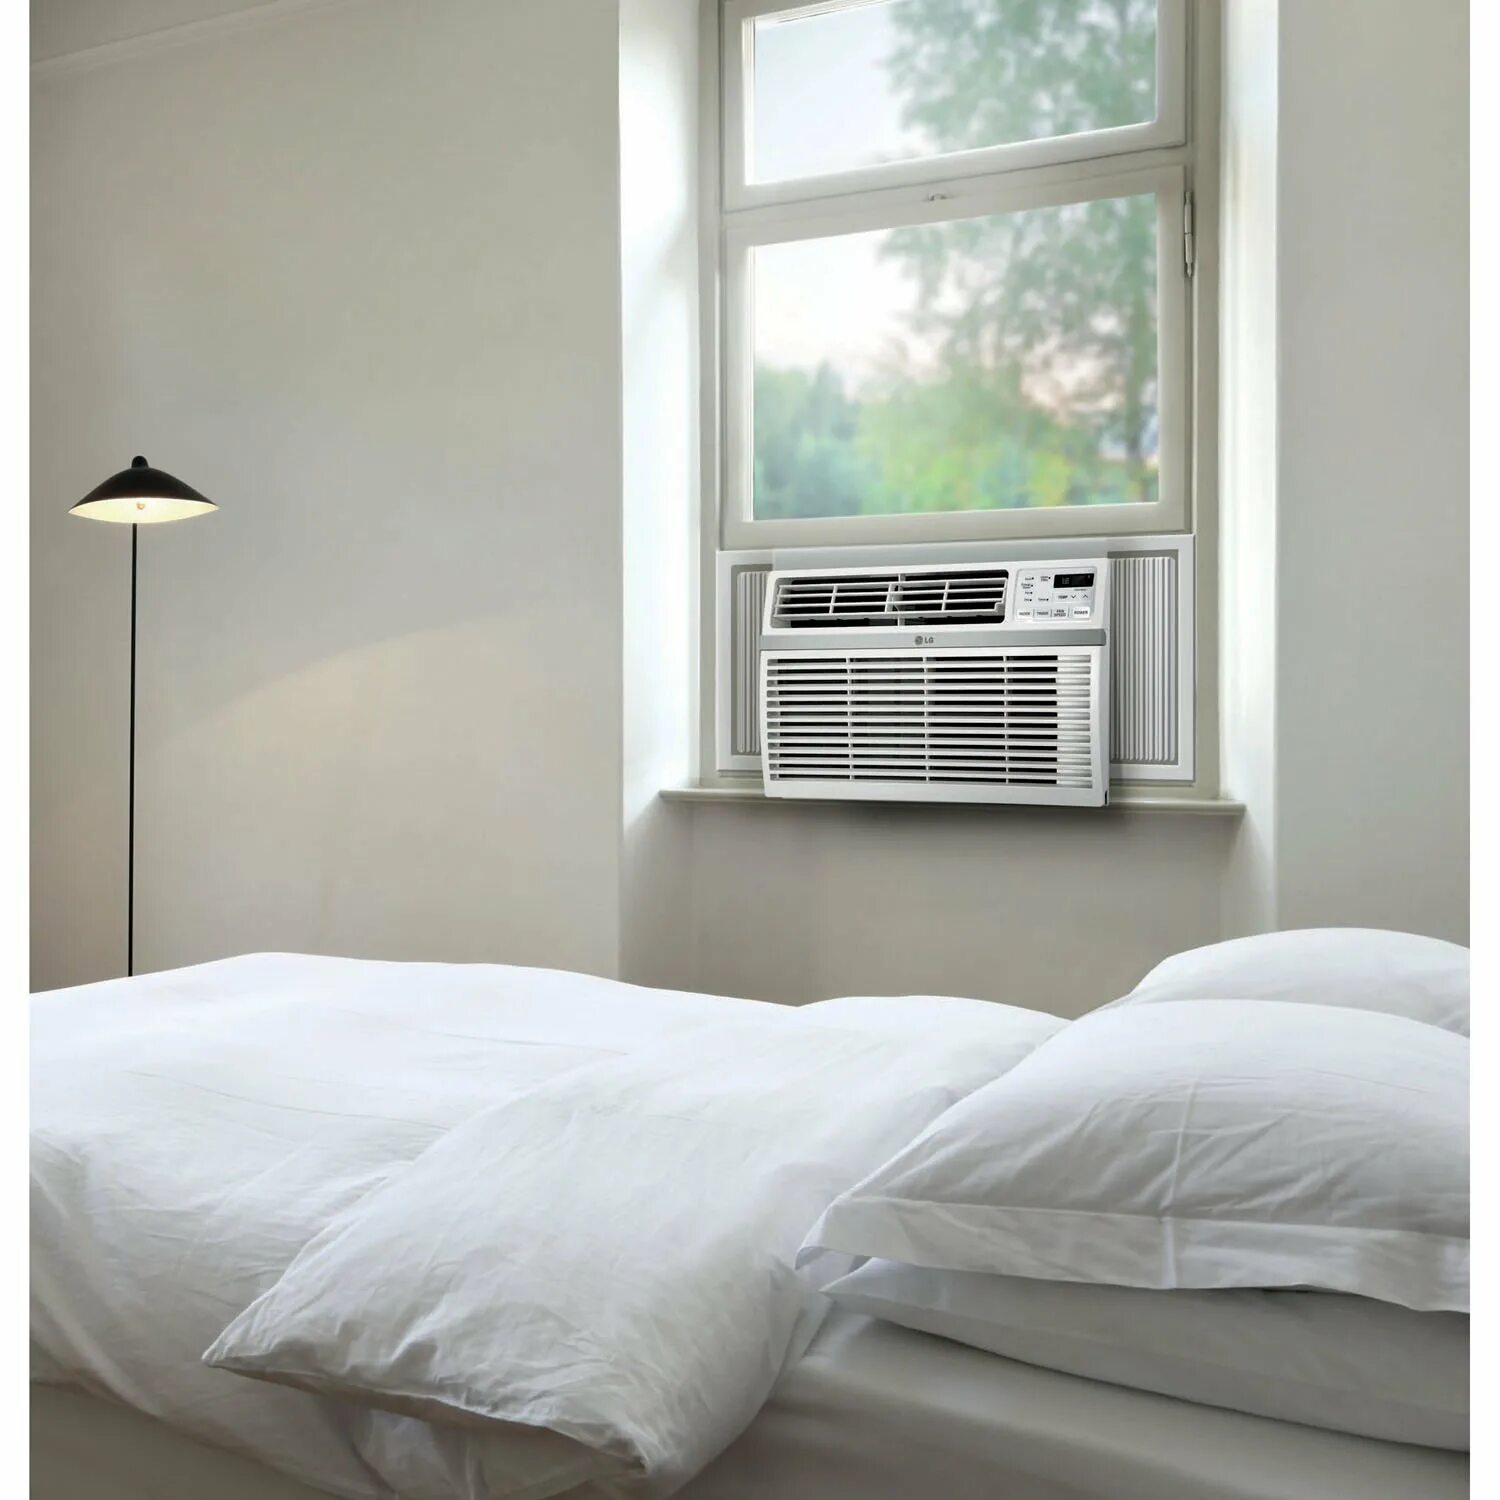 Кондиционеры для дома цены фото. Кондиционер LG Room Air Conditioner. Оконный кондиционер LG LW-n2460bhg. Оконный кондиционер Axioma asjc09-nm1a. LG Window Room Air Conditioner model LW C 0961hl.